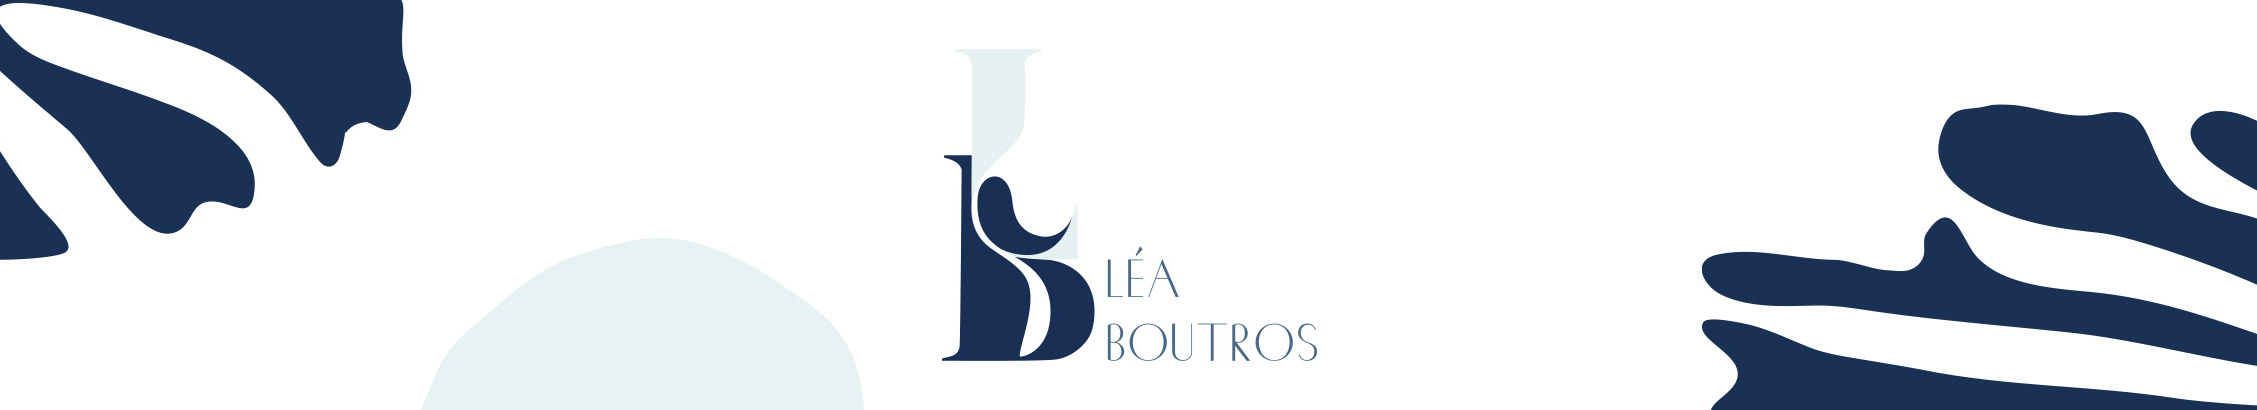 Lea Boutross profilbanner